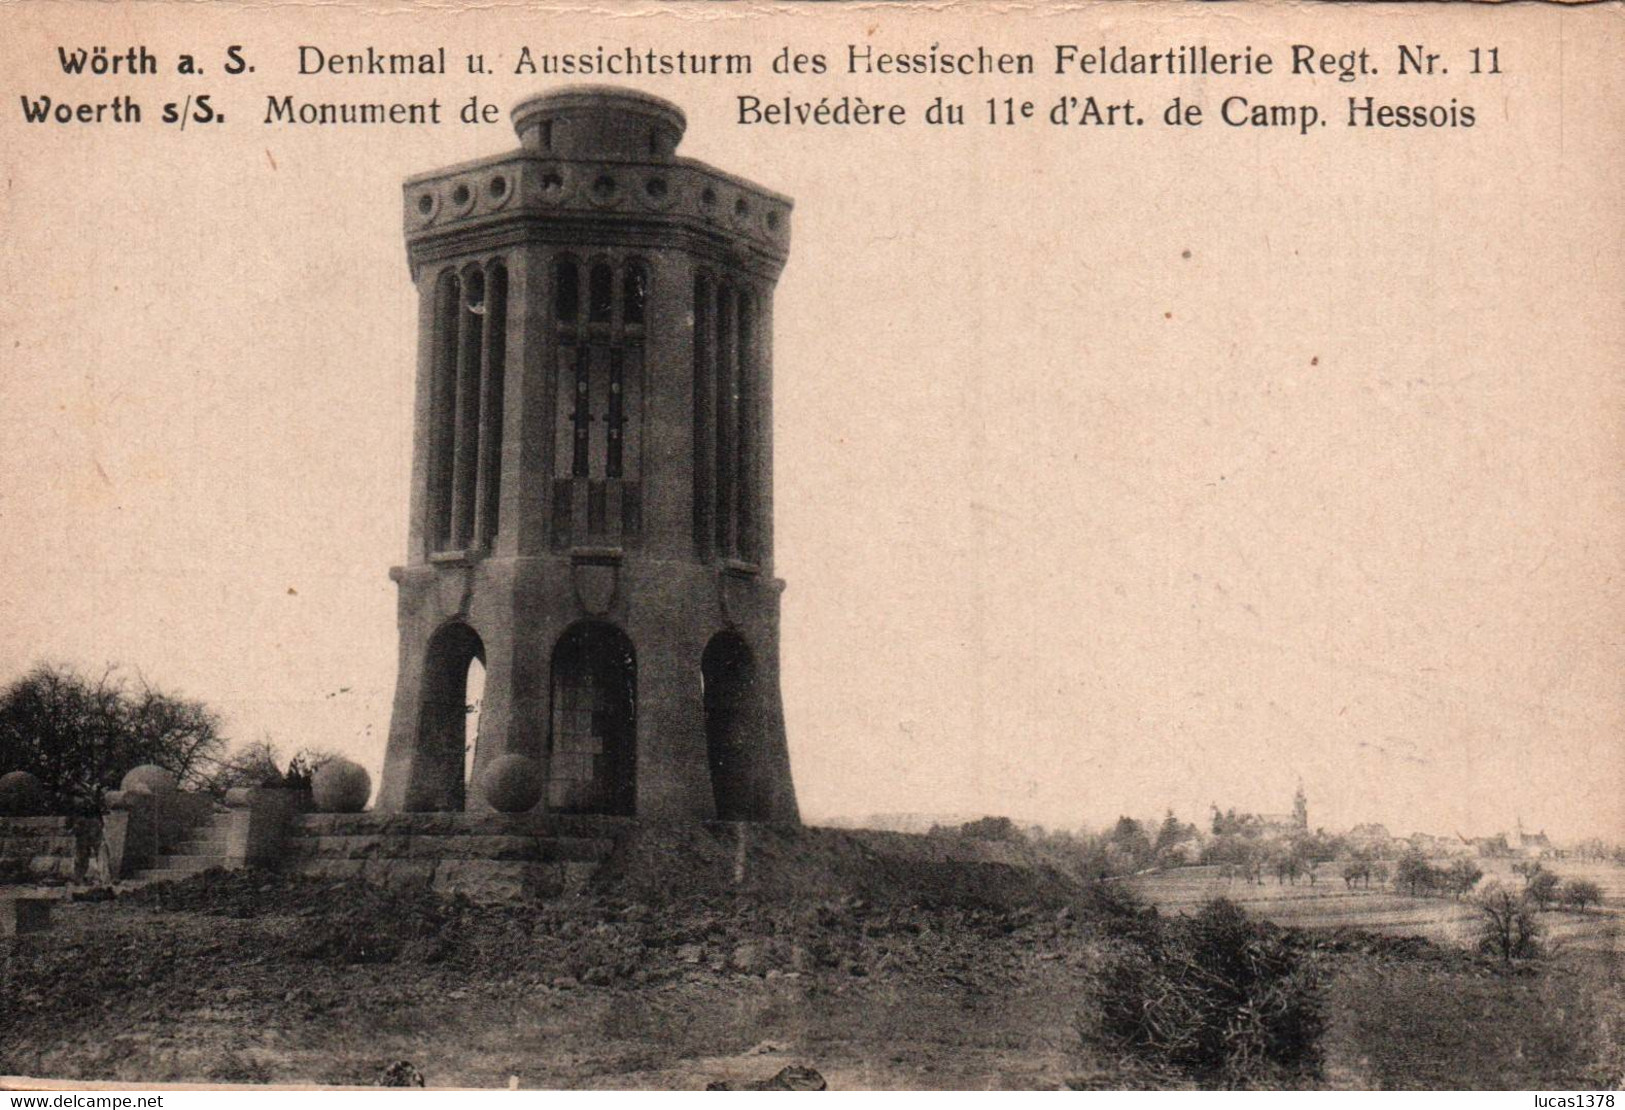 WOERTH S/S - MONUMENT DE BELVEDERE DU 11e D'ART. DE CAMP. HESSOIS - Wörth